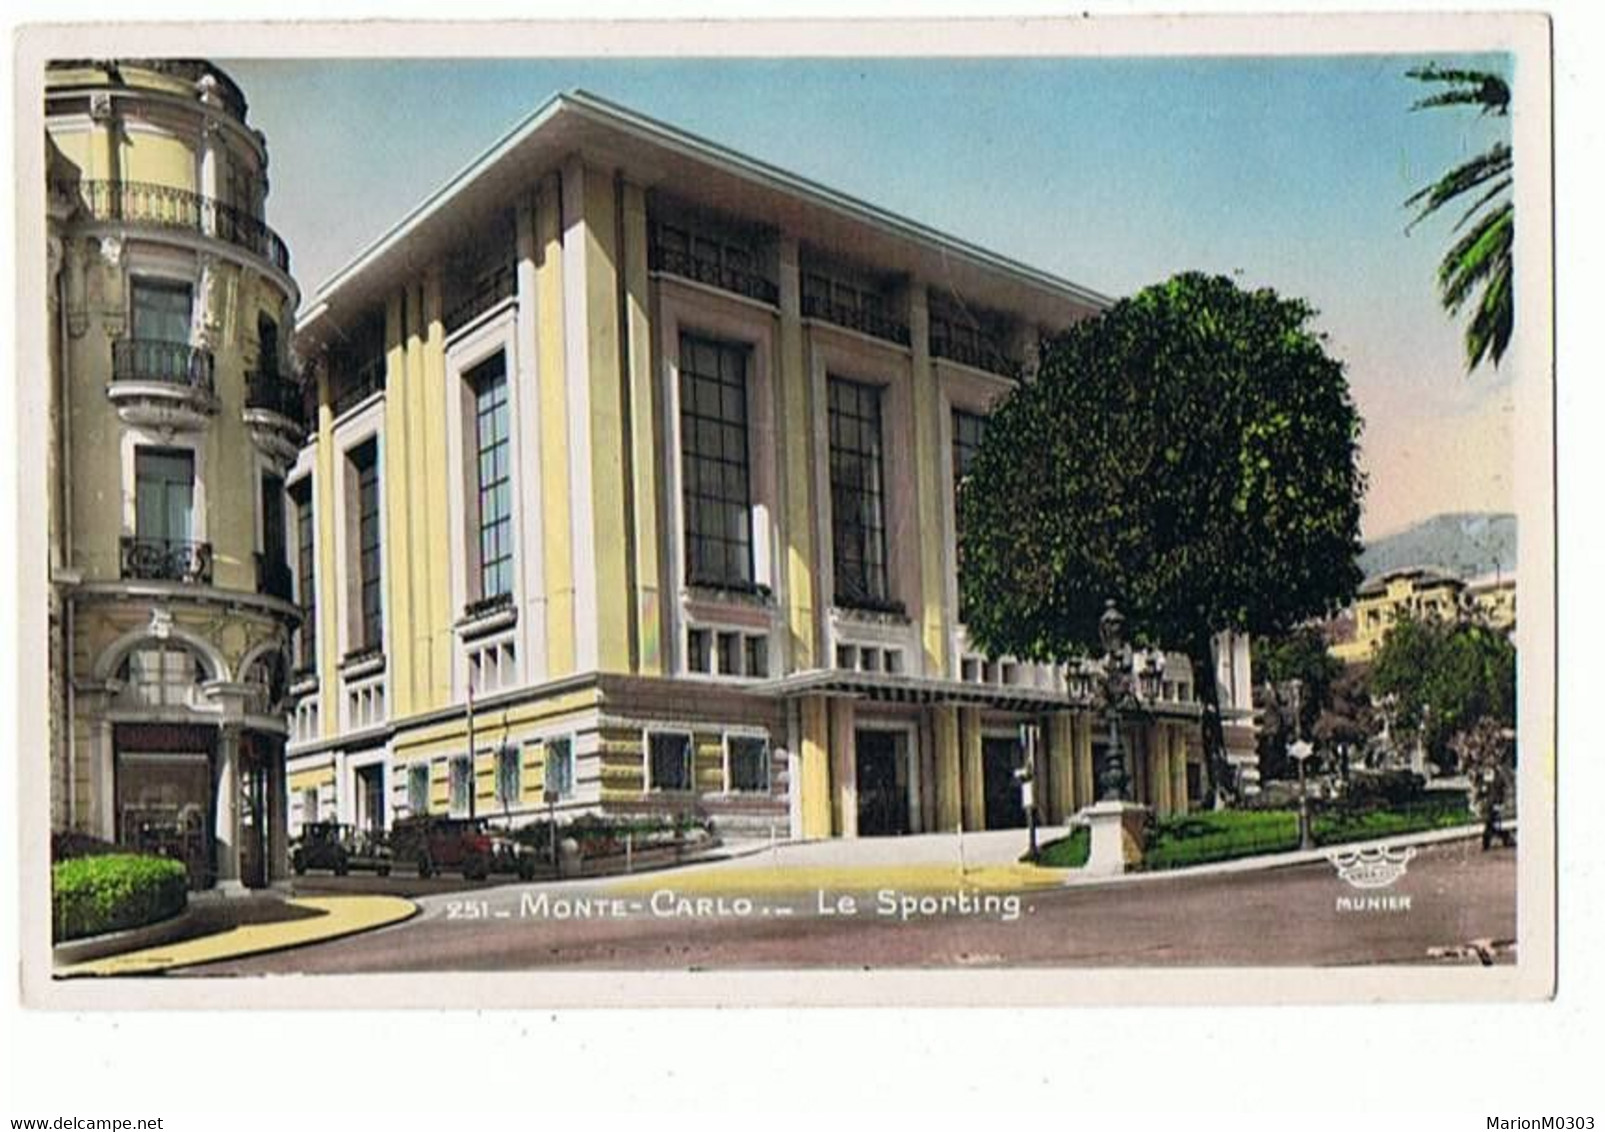 MONACO - Monte Carlo, Le Sporting - 214 - Operahuis & Theater